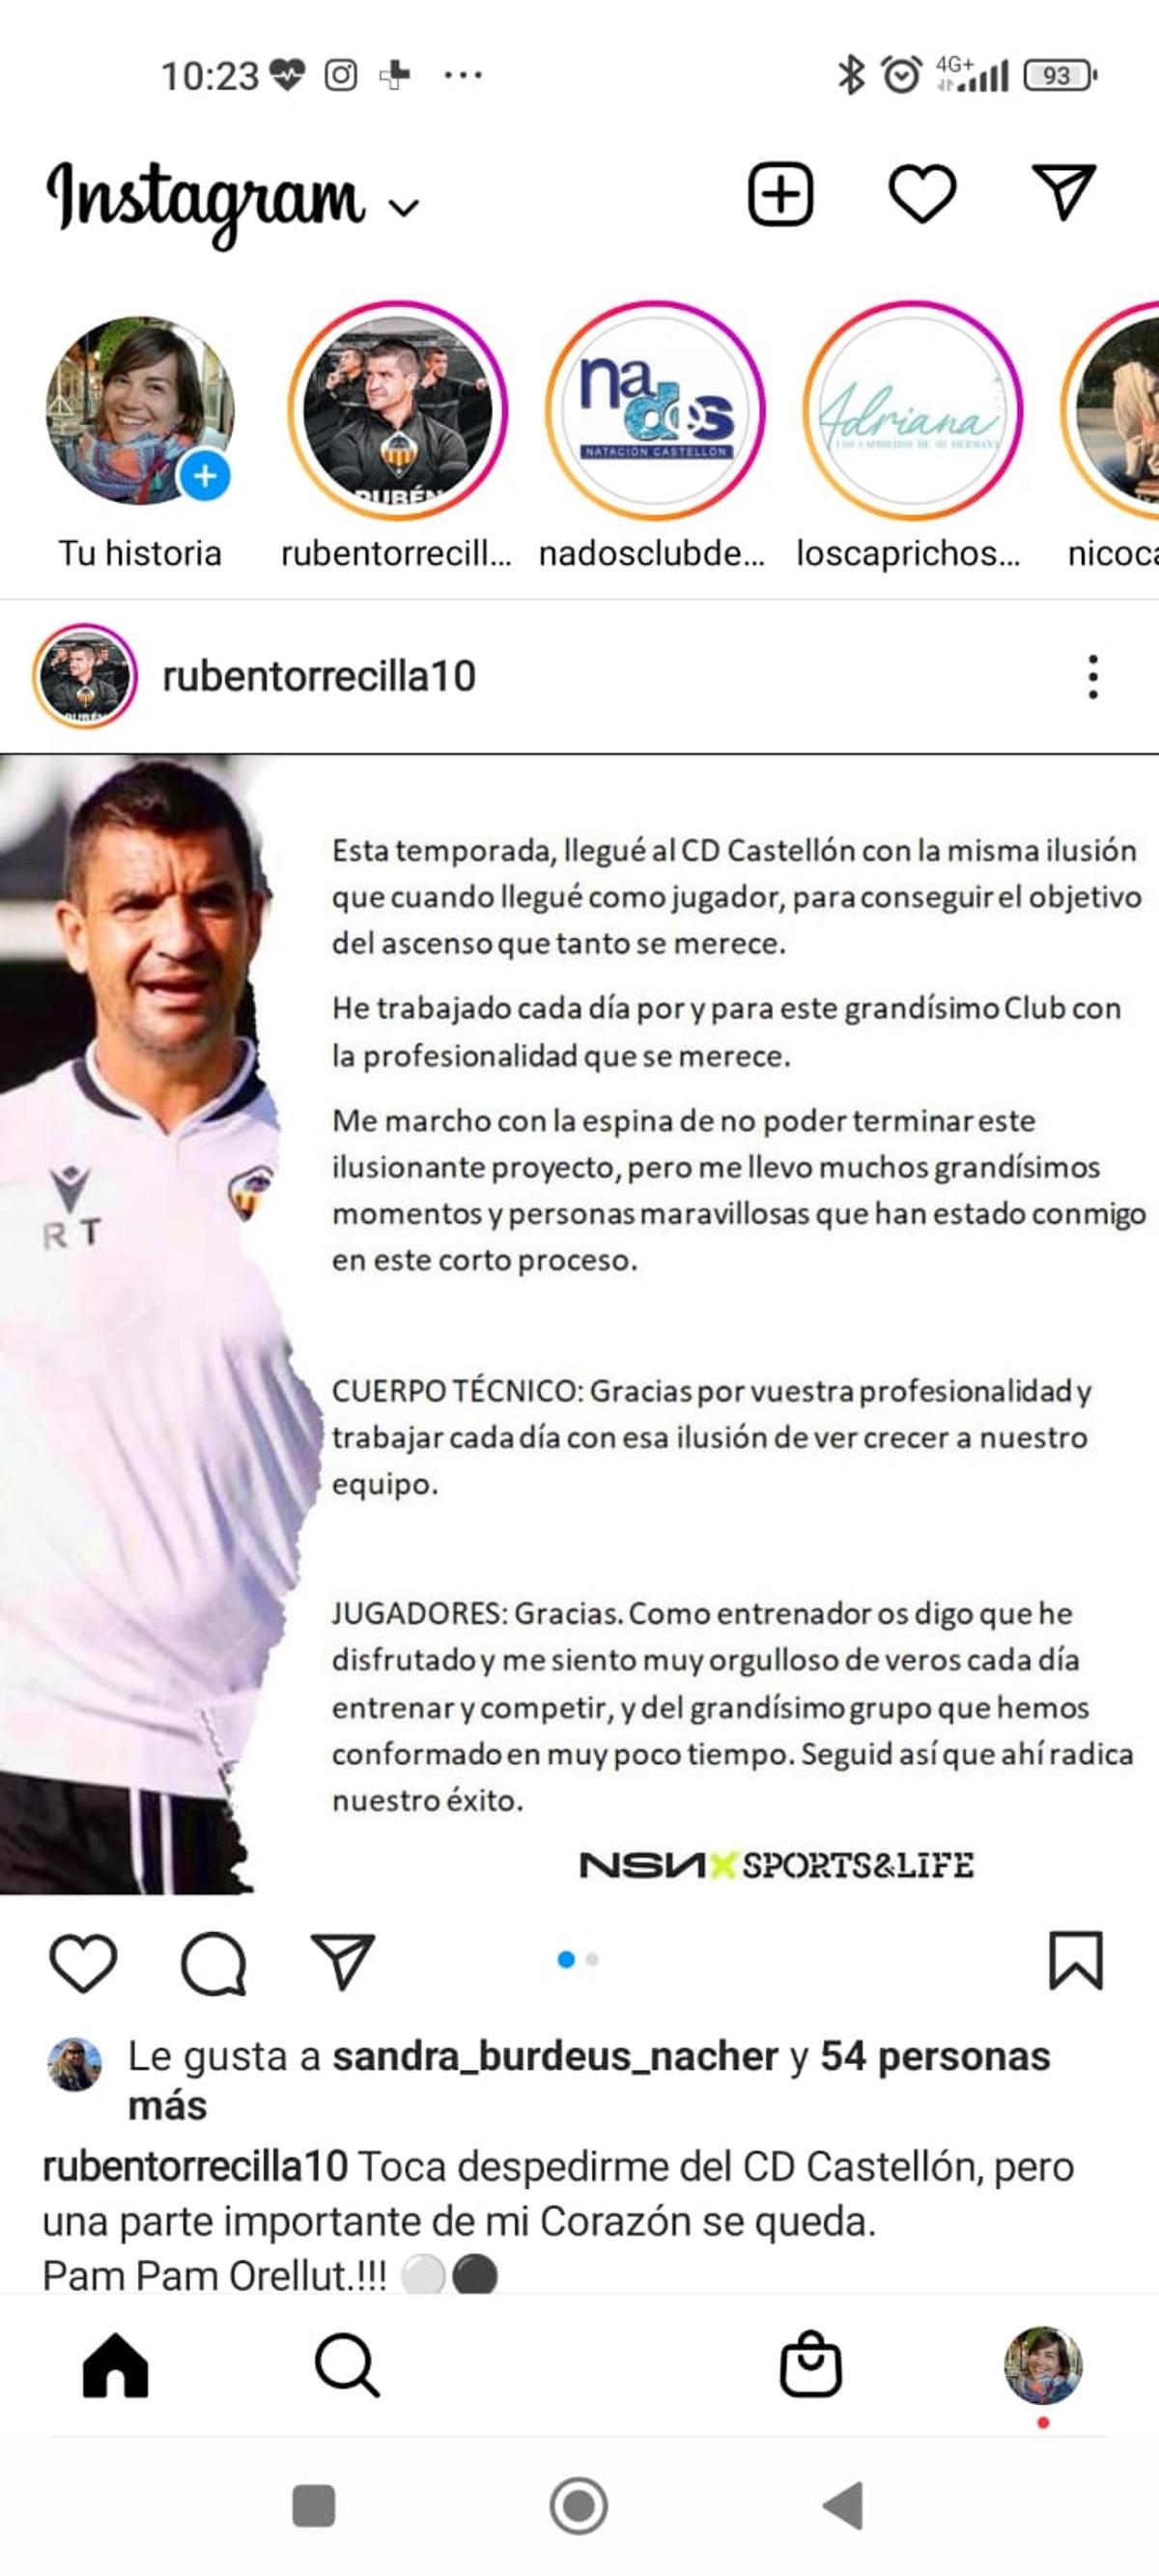 La carta de despedida de Rubén Torrecilla como entrenador del CD Castellón.